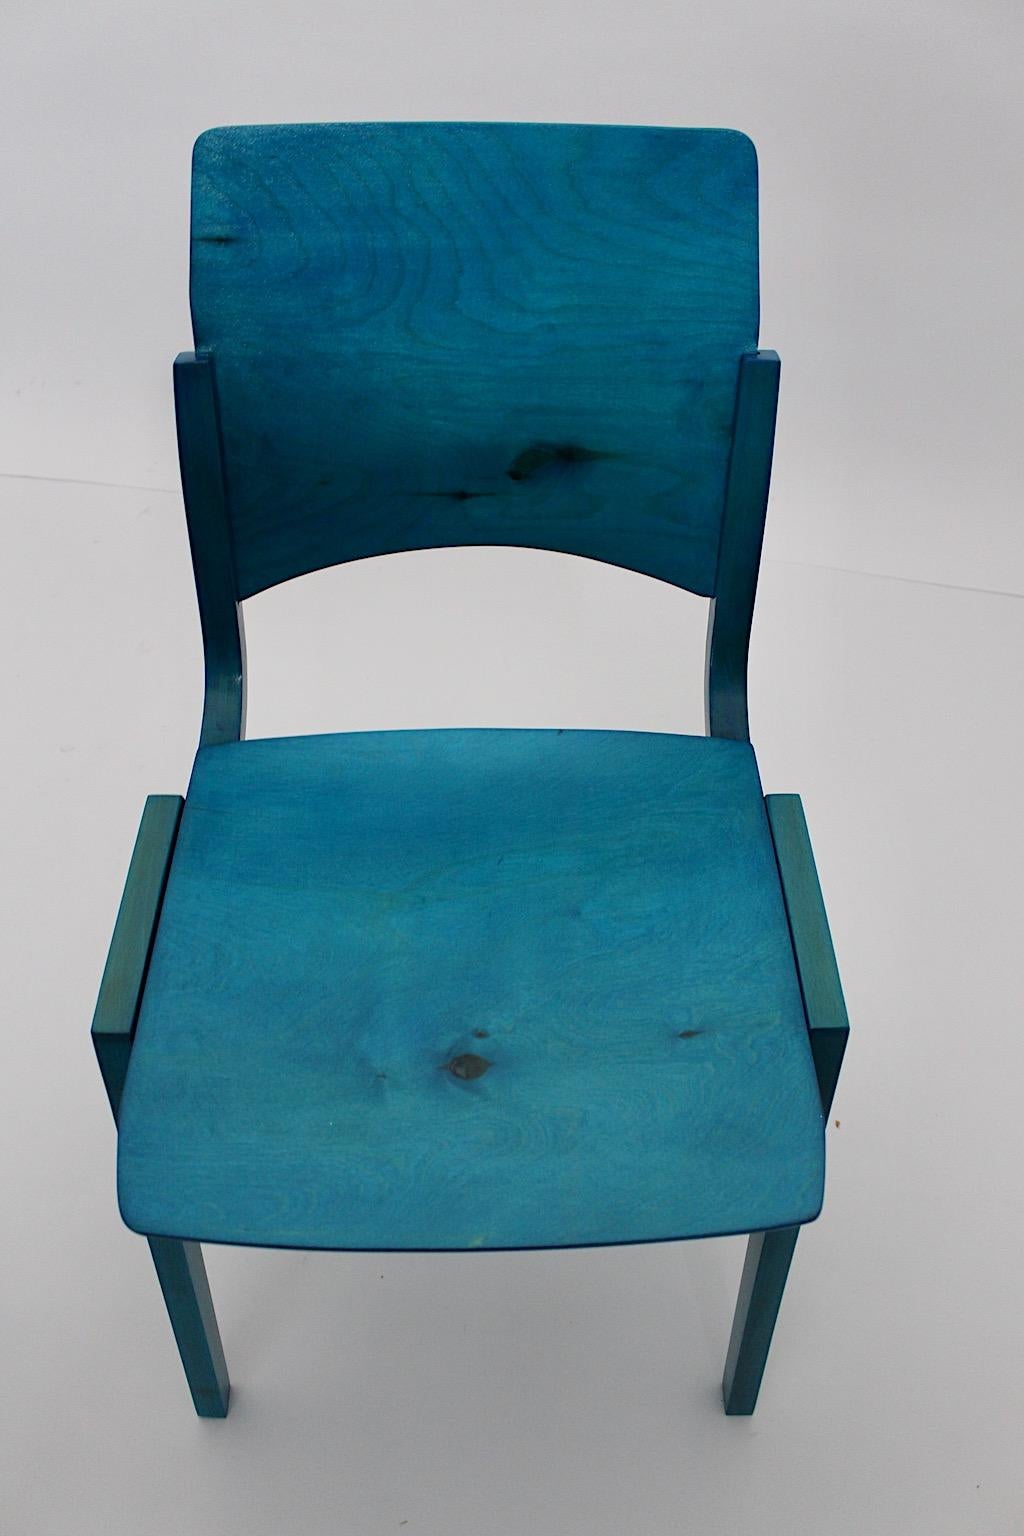 Beech Mid-Century Modern Vintage Blue Twelve Dining Chairs Roland Rainer 1952 Vienna For Sale